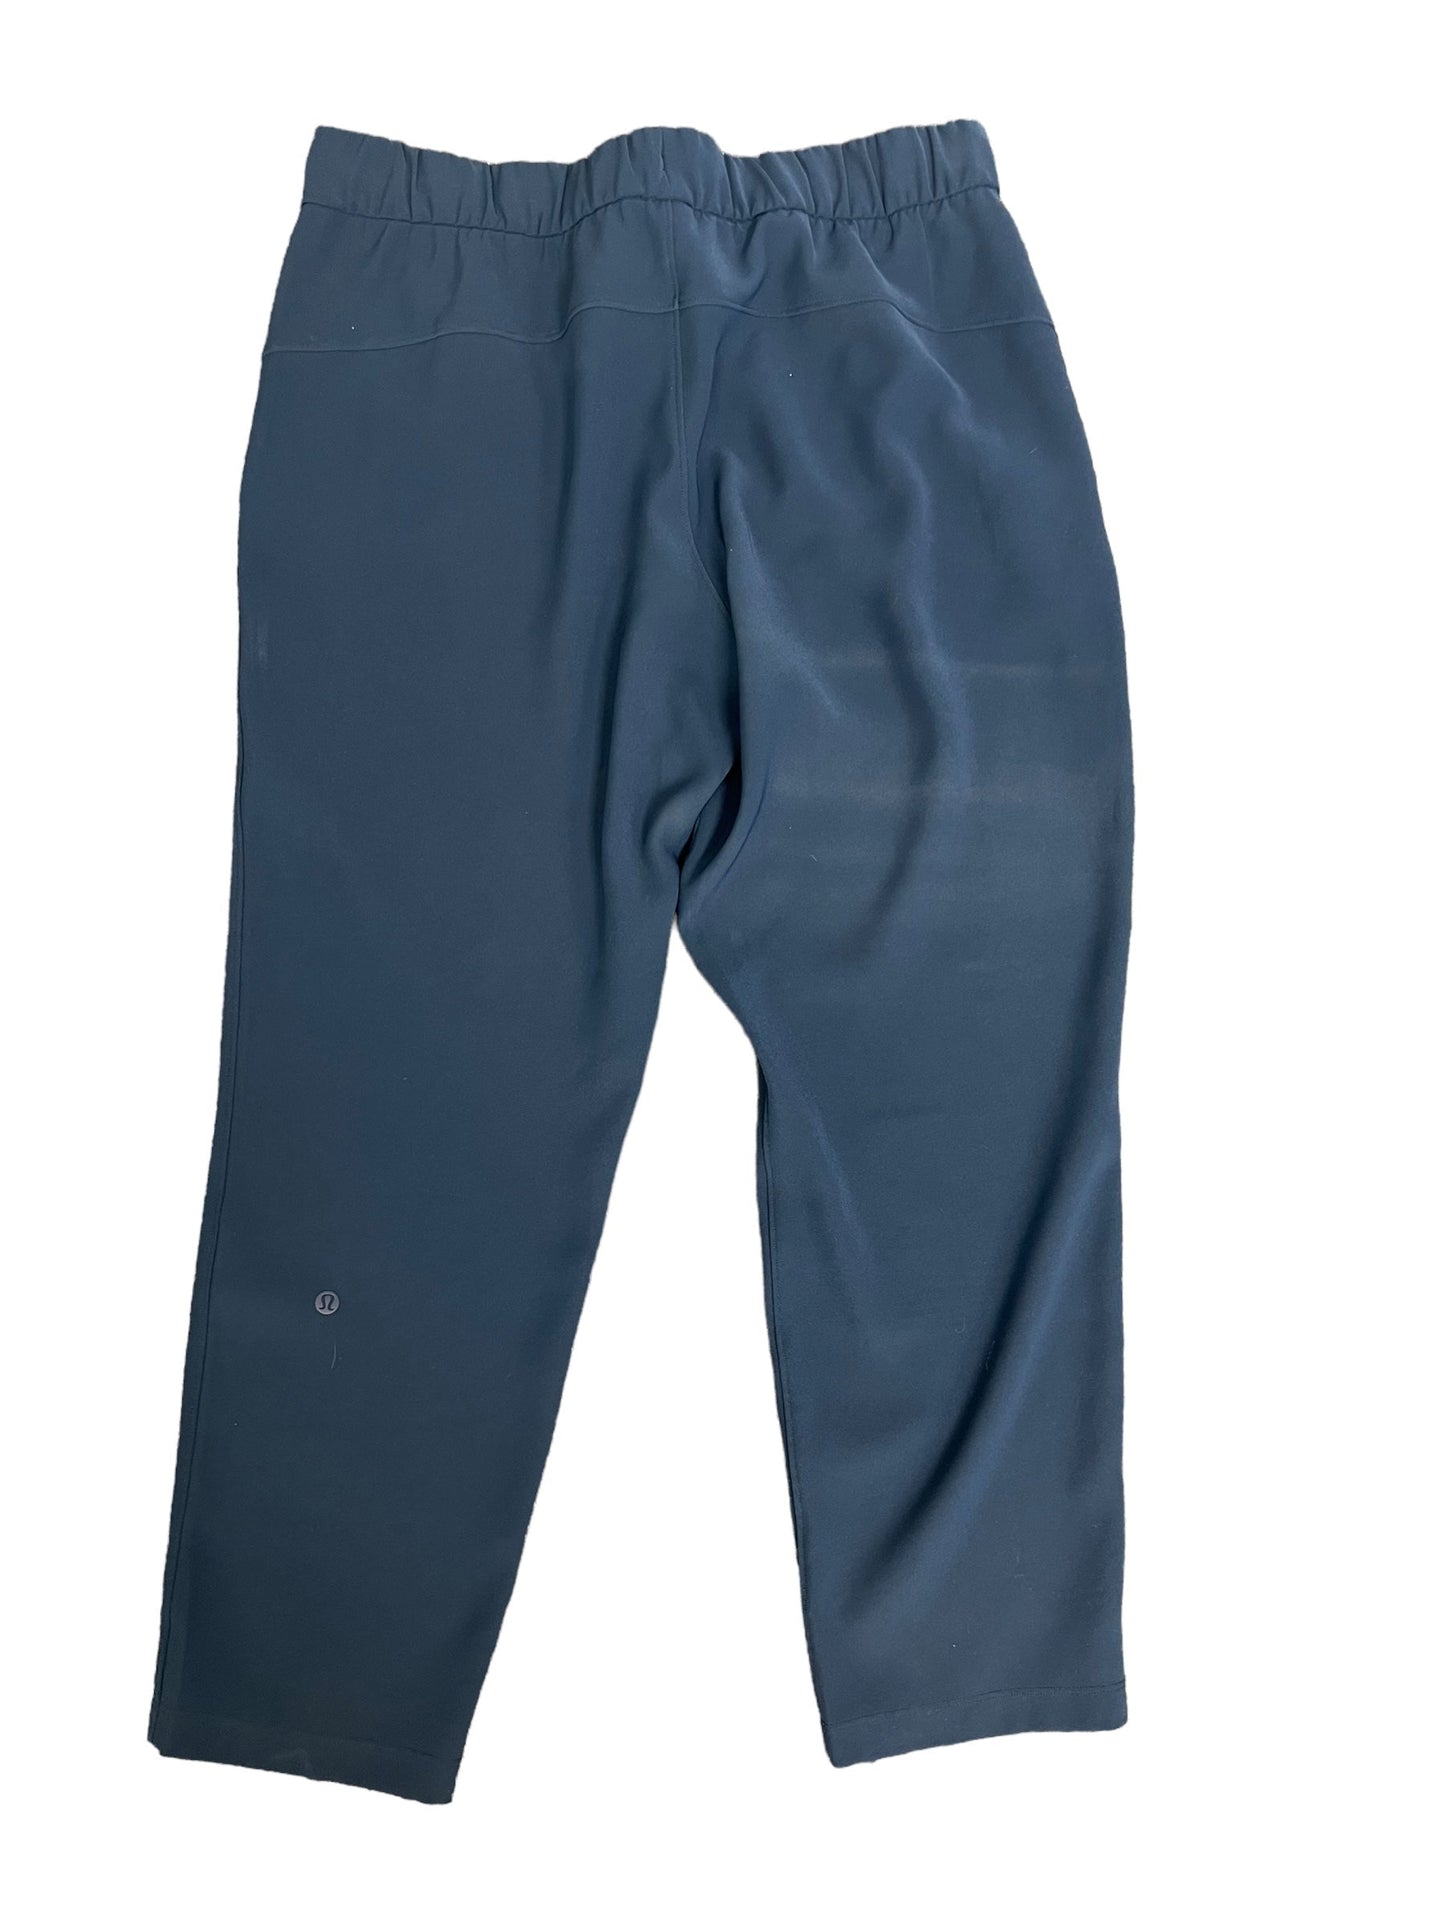 Navy Athletic Pants Lululemon, Size 12